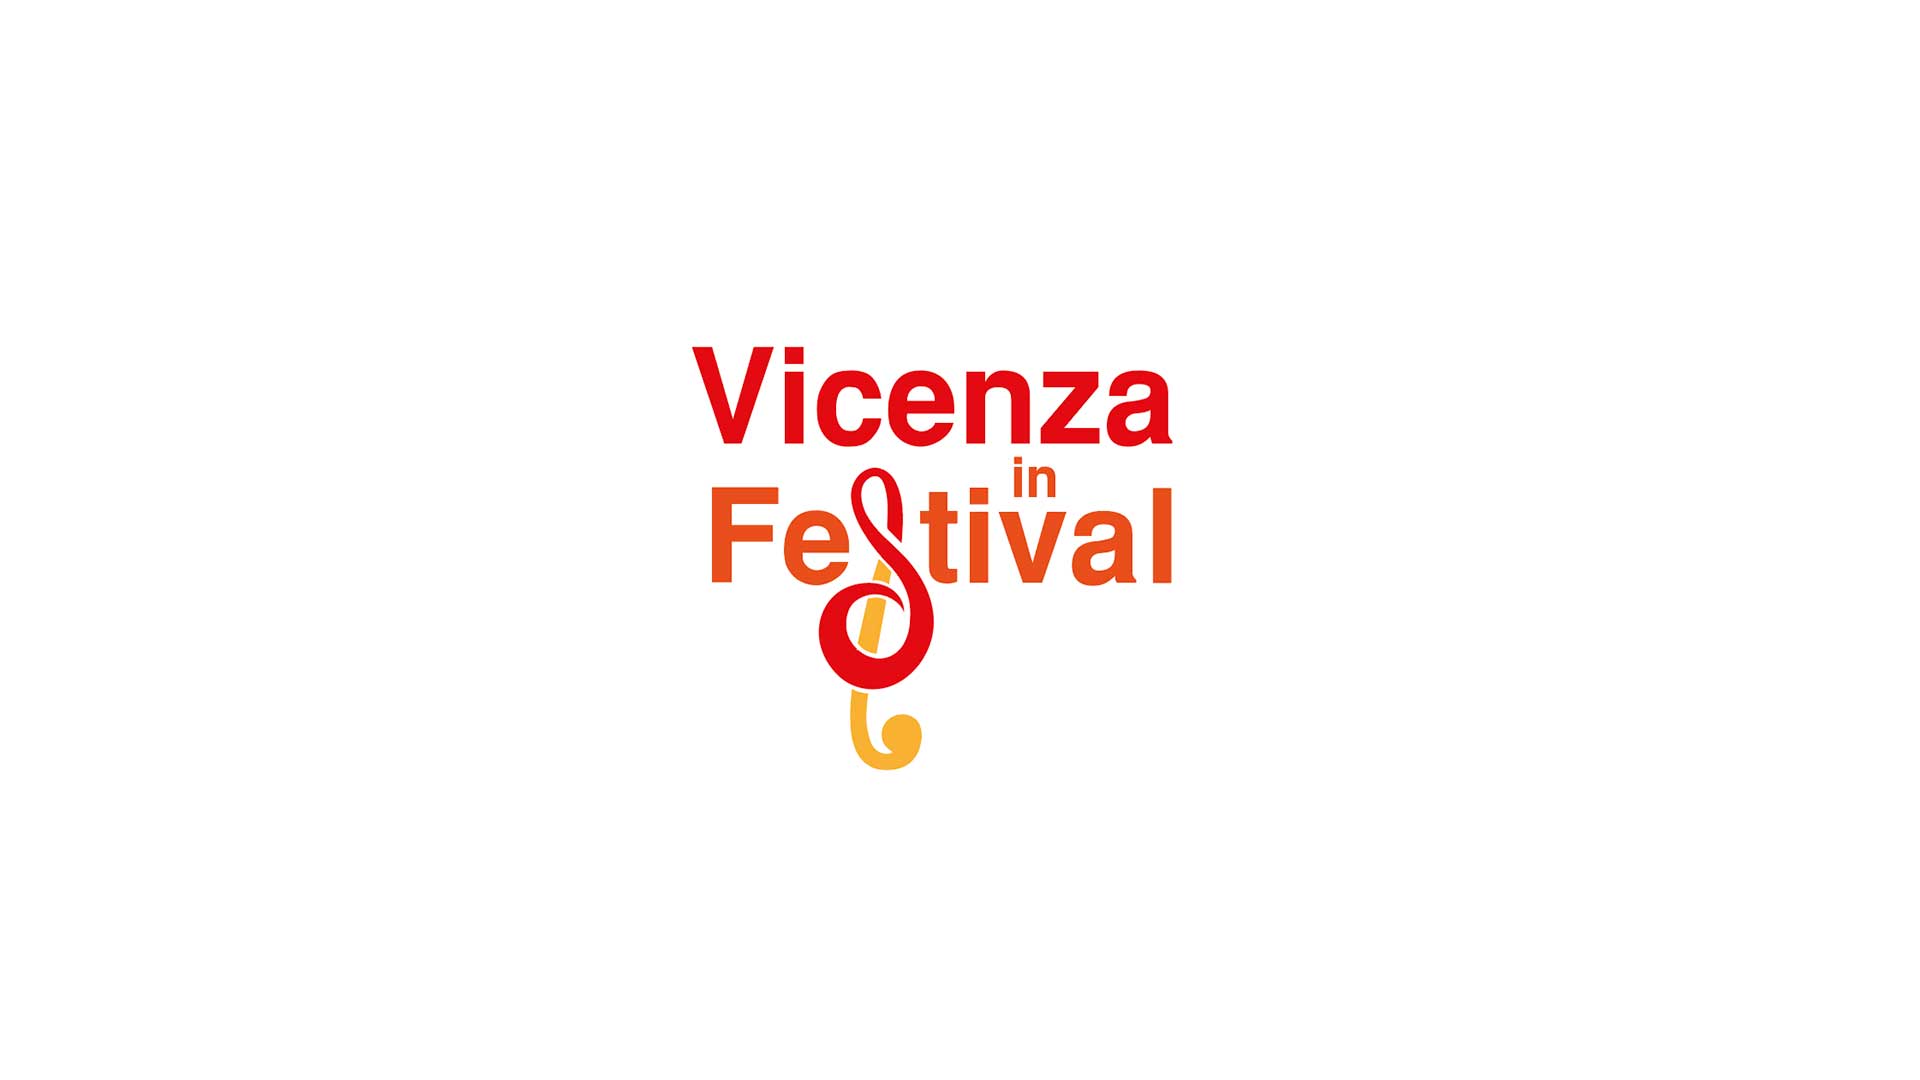 Vicenza in Festival